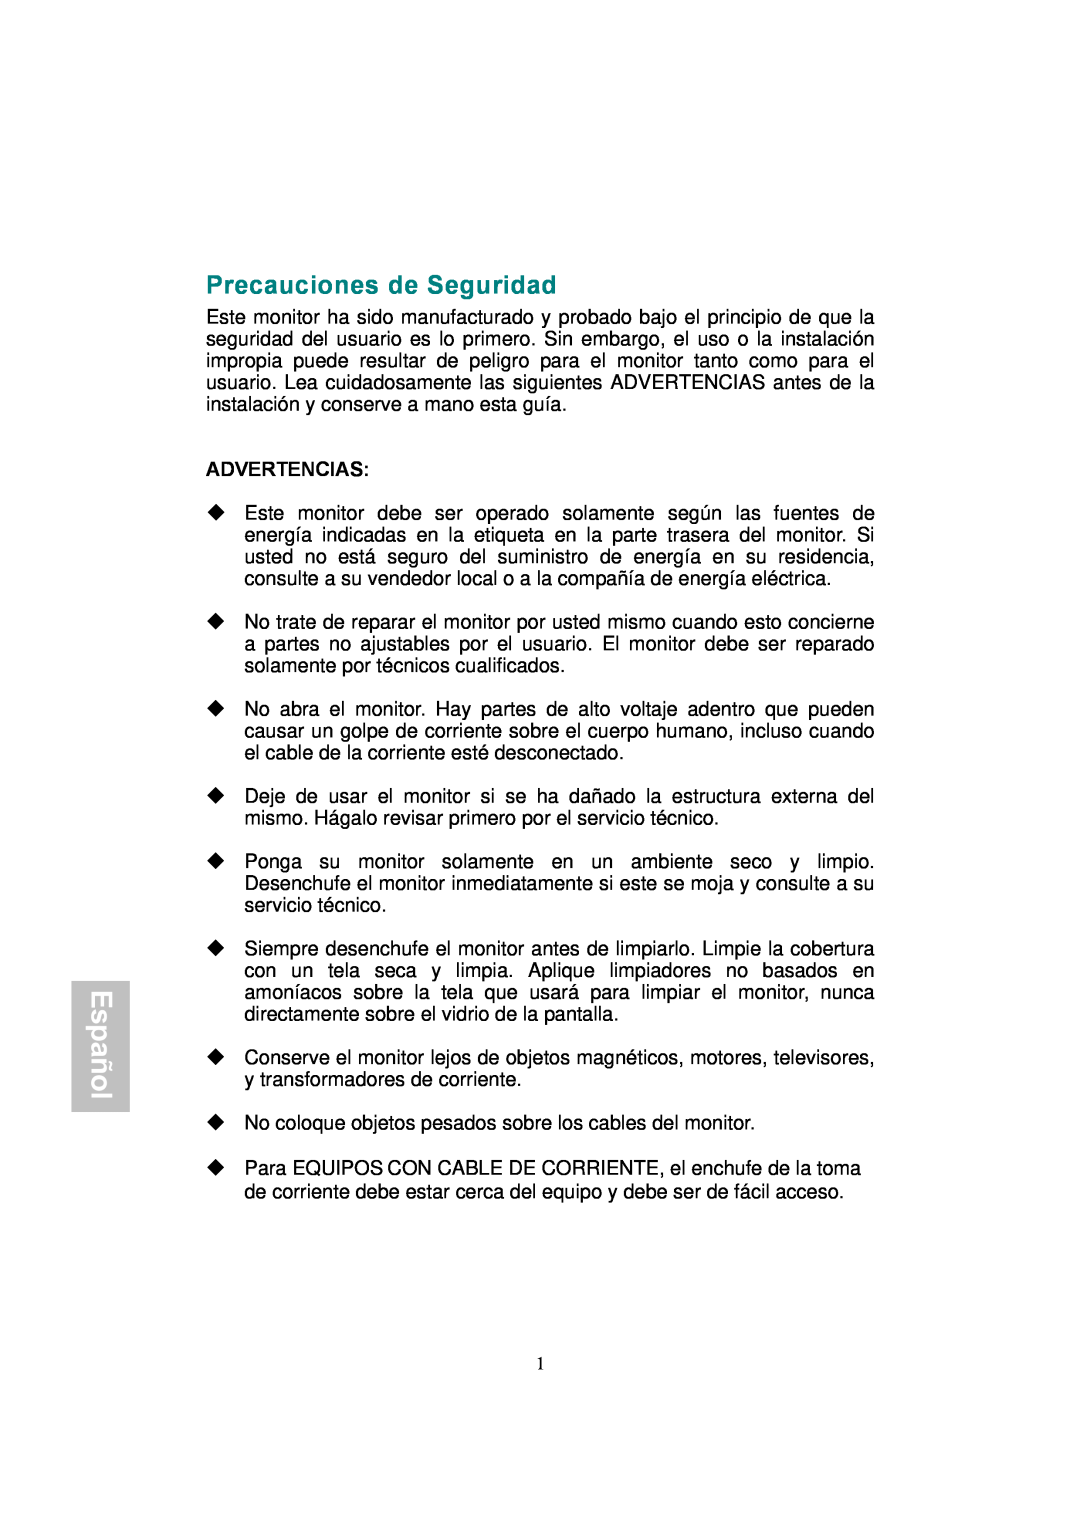 AOC 177Sa-1 manual Precauciones de Seguridad, Español, Advertencias 